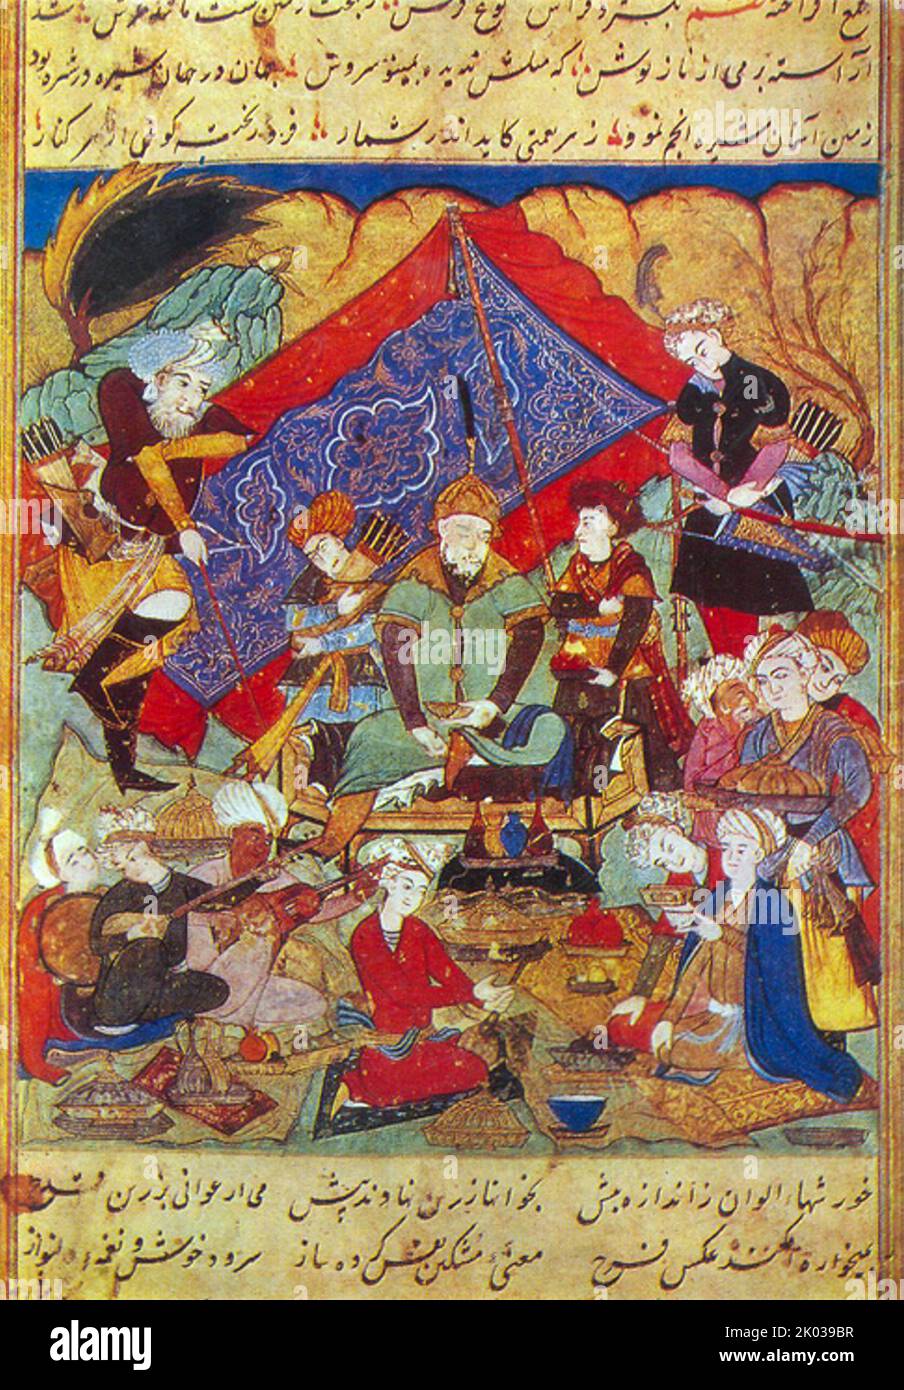 Timur-Feste in der Umgebung von Samarkand. Timur (1336 - 1405), später Timur Gurkan, ein turkmongolischer Eroberer, der das timuridische Reich in und um das heutige Afghanistan, den Iran und Zentralasien gründete und zum ersten Herrscher der timuridischen Dynastie wurde. Als unbesiegter Kommandant gilt er weithin als einer der größten militärischen Führer+E18ers und Taktiker in der Geschichte. Stockfoto